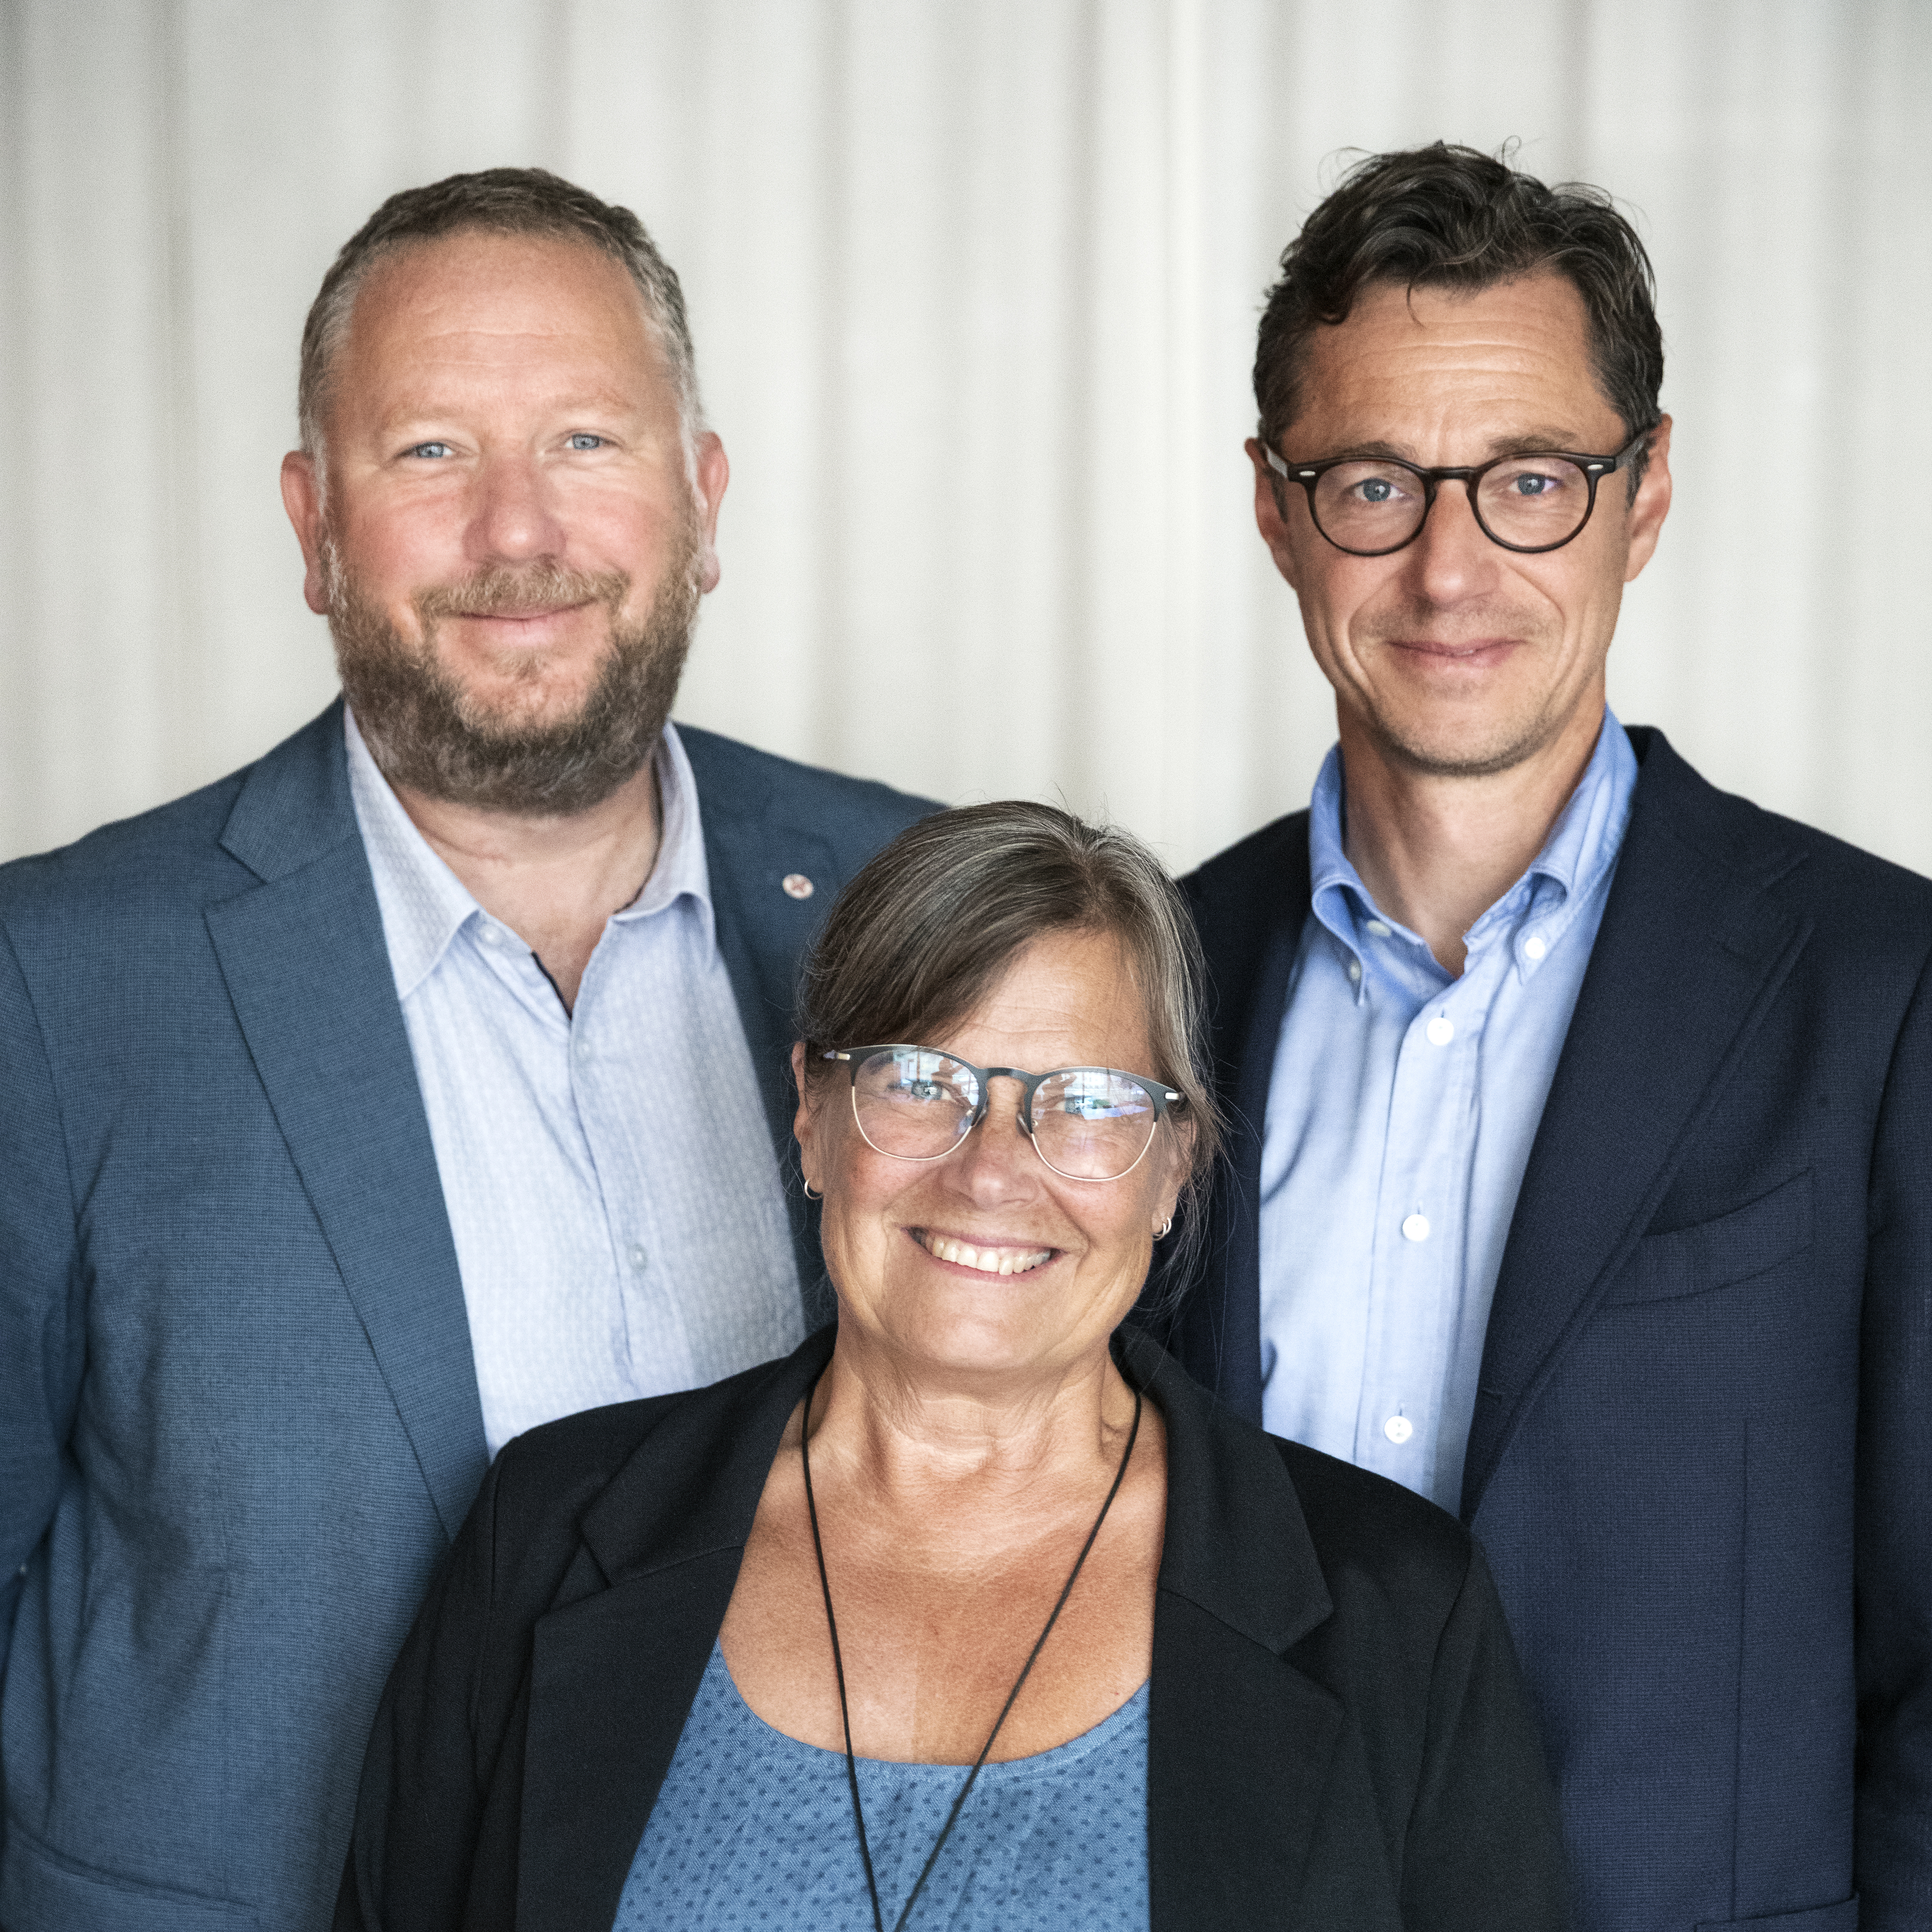 Lasse Svensson, Joakim Hagerius och Karin Wiborn, kyrkoledare i Equmeniakyrkan